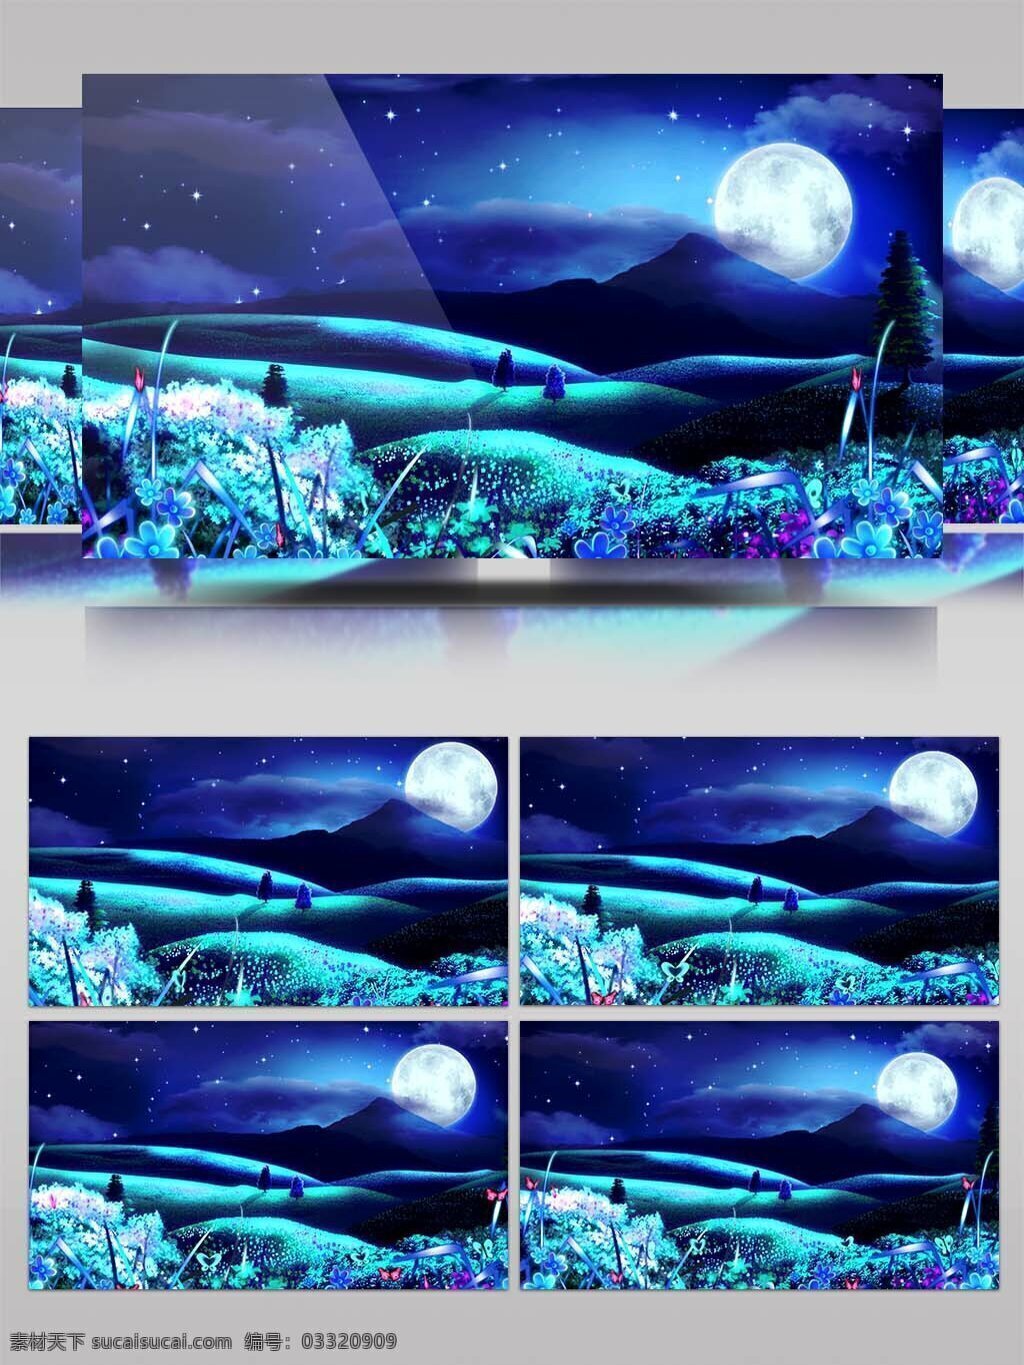 高清 唯美 月亮 蝴蝶 动态 背景 视频 3d led显示屏 超高清 大屏幕 繁星 光影 荷塘 婚庆 蓝色 流星 舞台